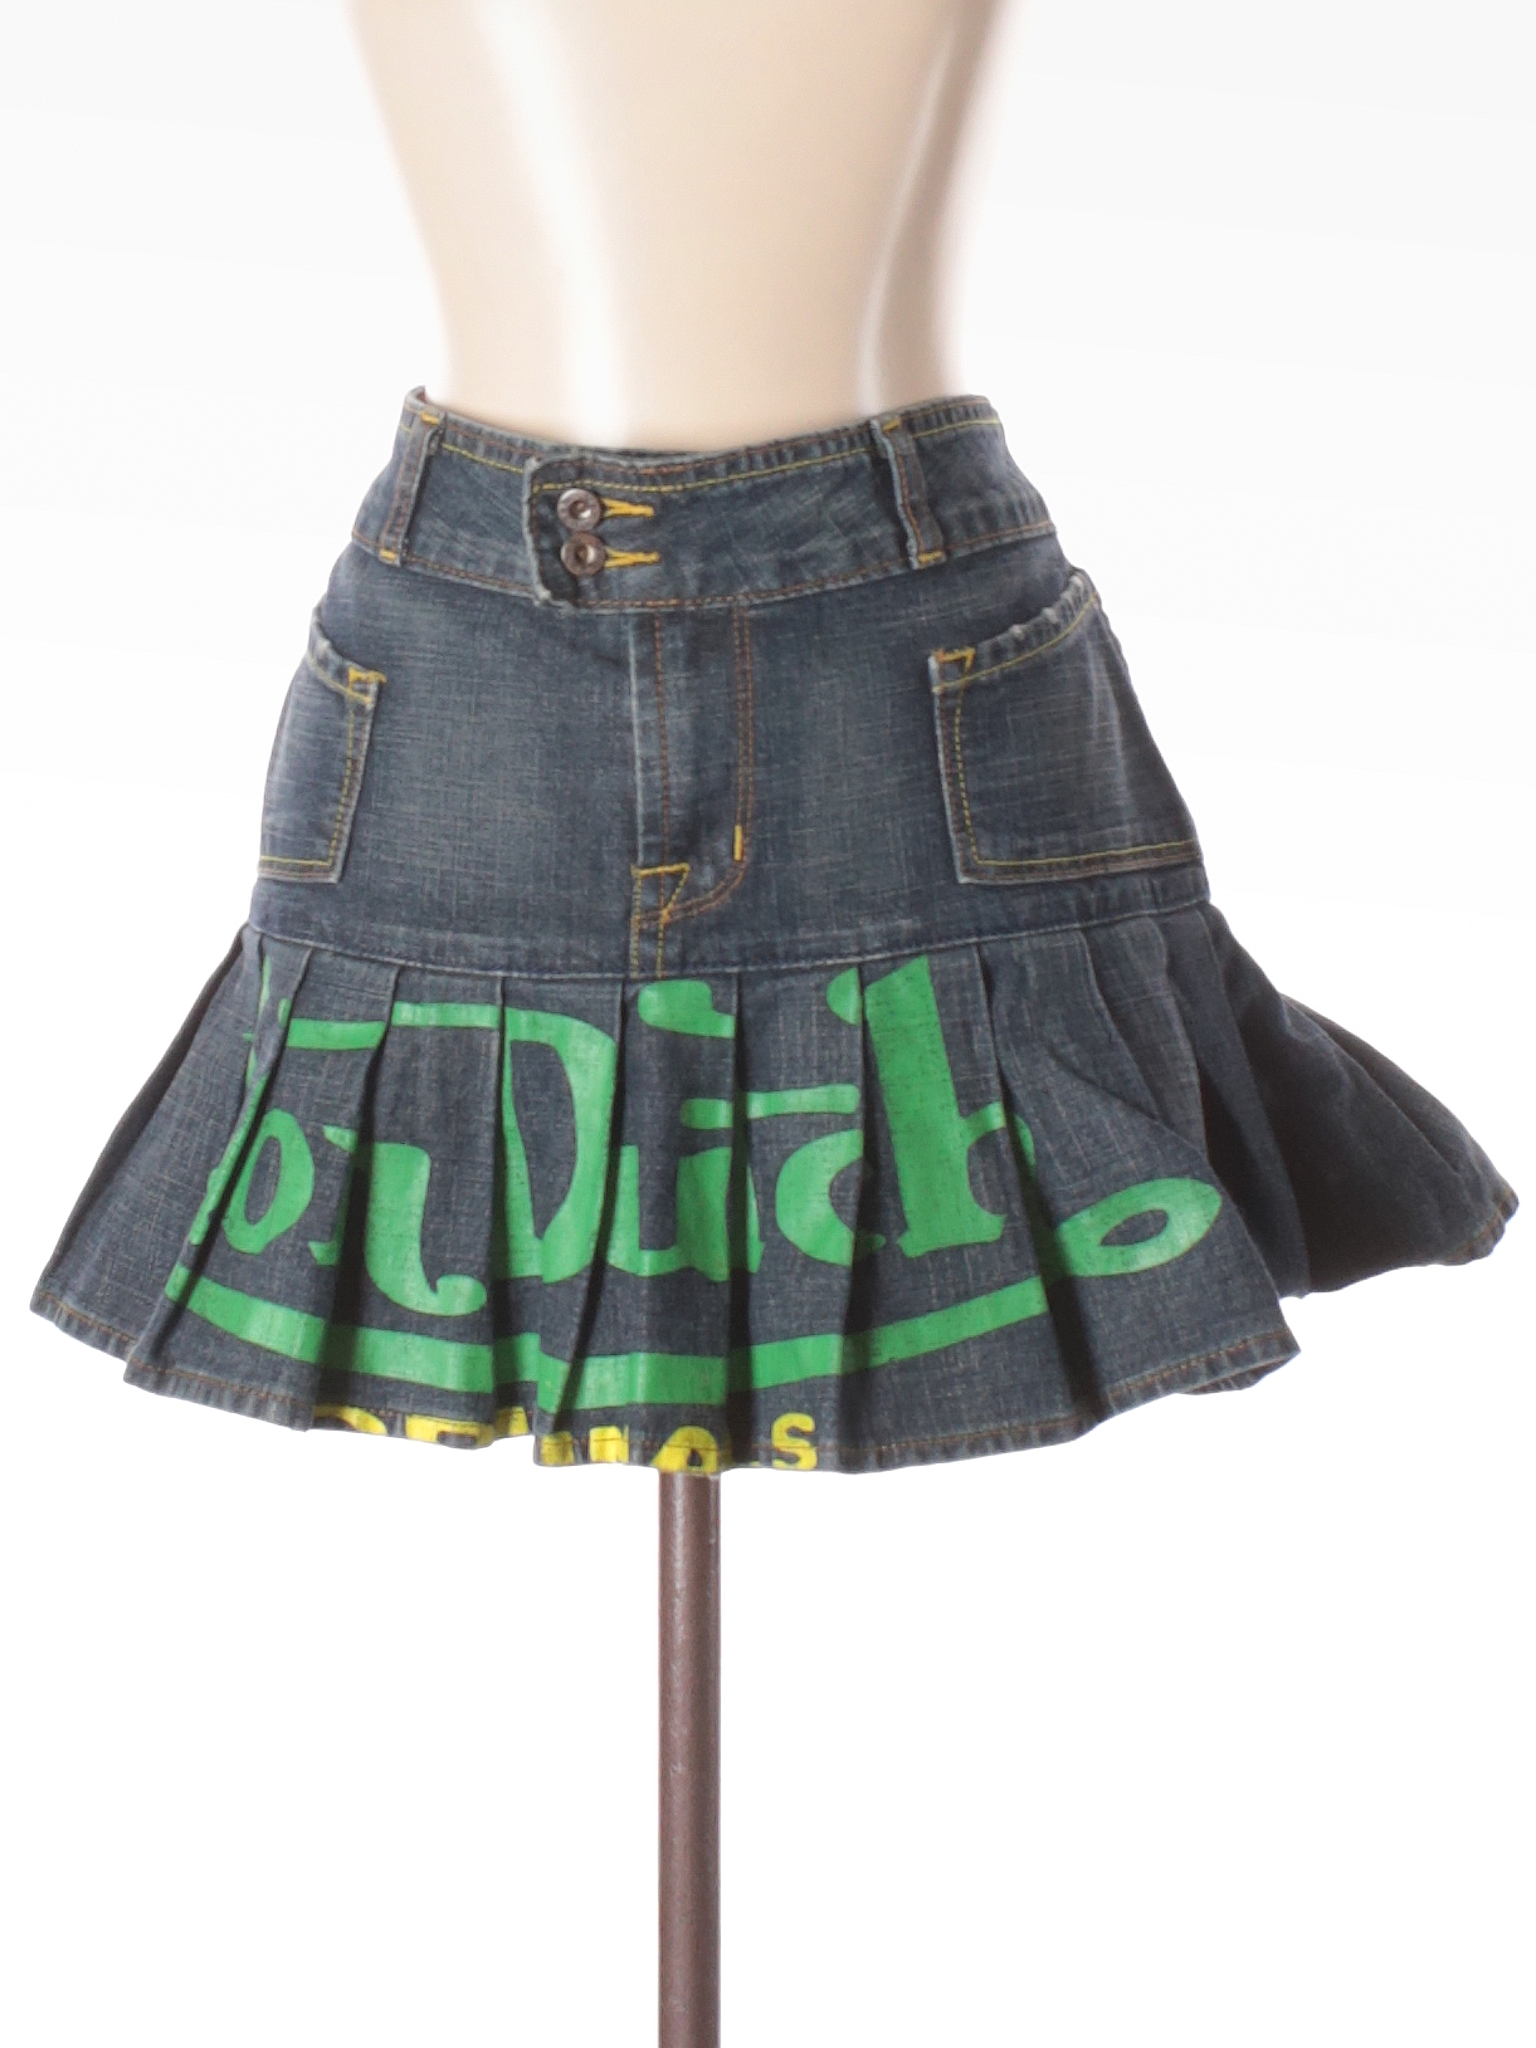 Von Dutch Graphic Dark Blue Denim Skirt Size M - 0% off | thredUP